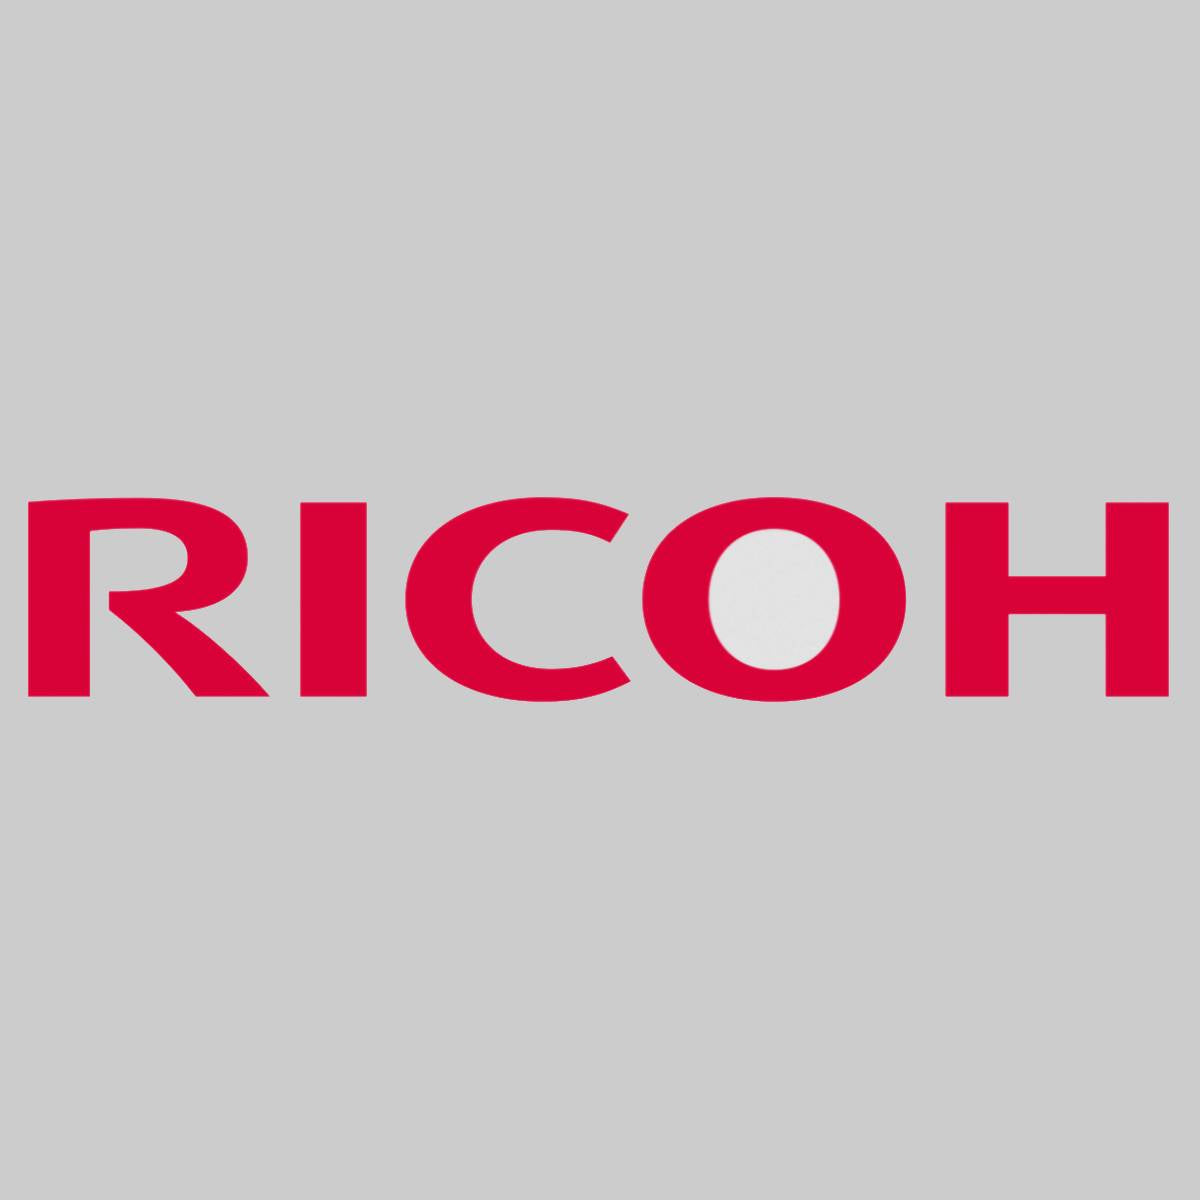 "Original Ricoh Coating Bar D179-3635 für Ricoh Pro 8100 8110 8120 NEU OVP^